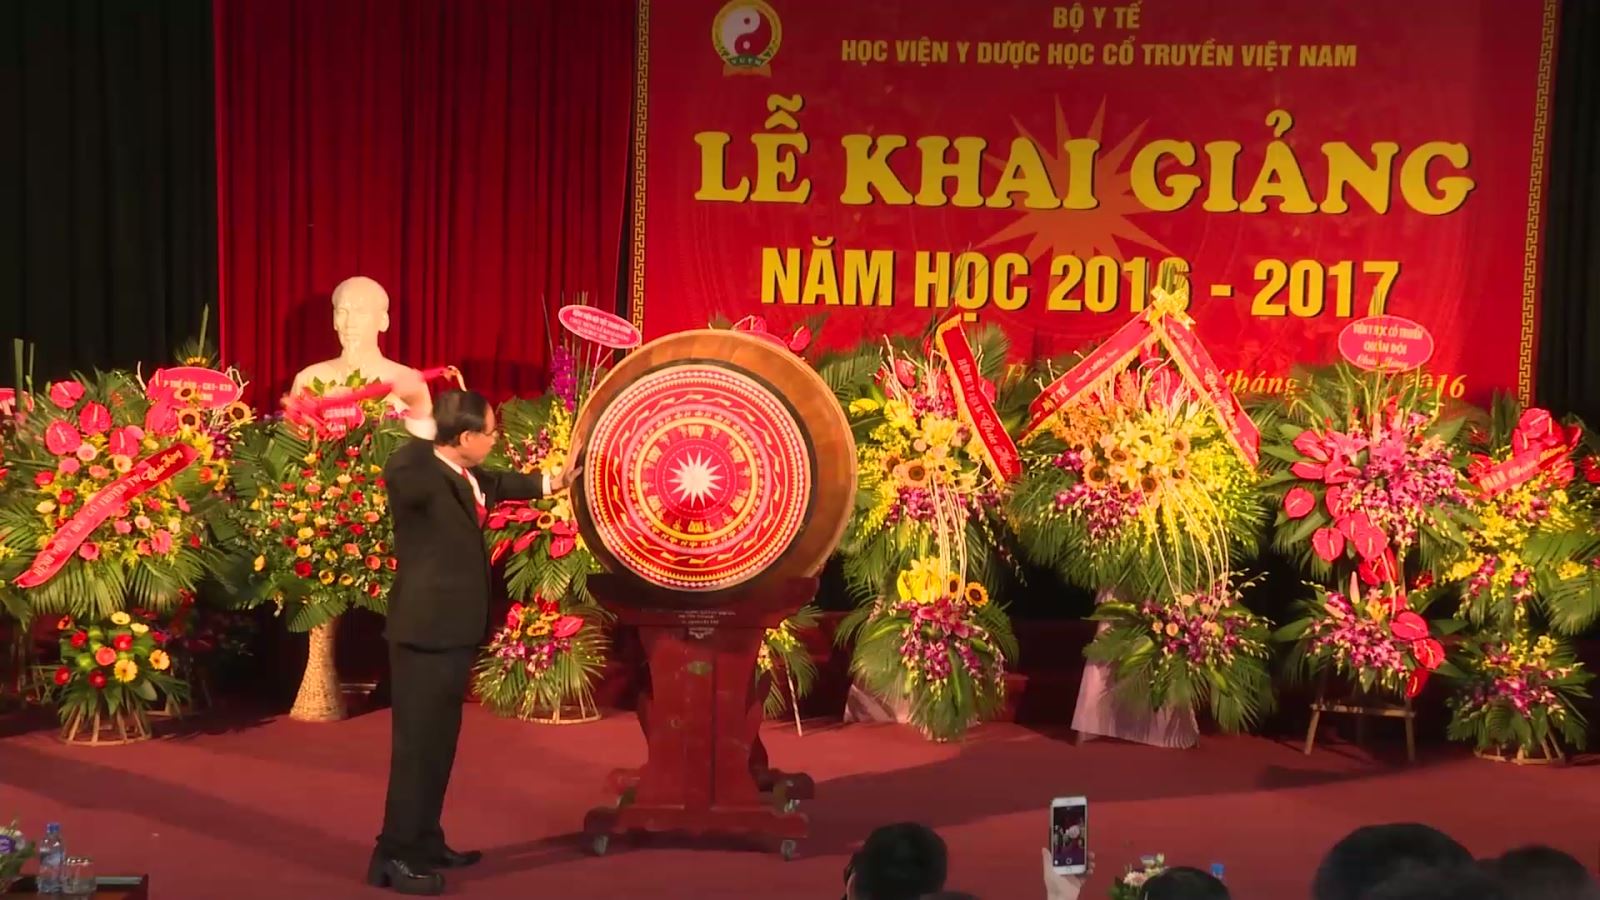 Học viện Y Dược học cổ truyền Việt Nam tổ chức lễ khai giảng năm học 201 6- 2017